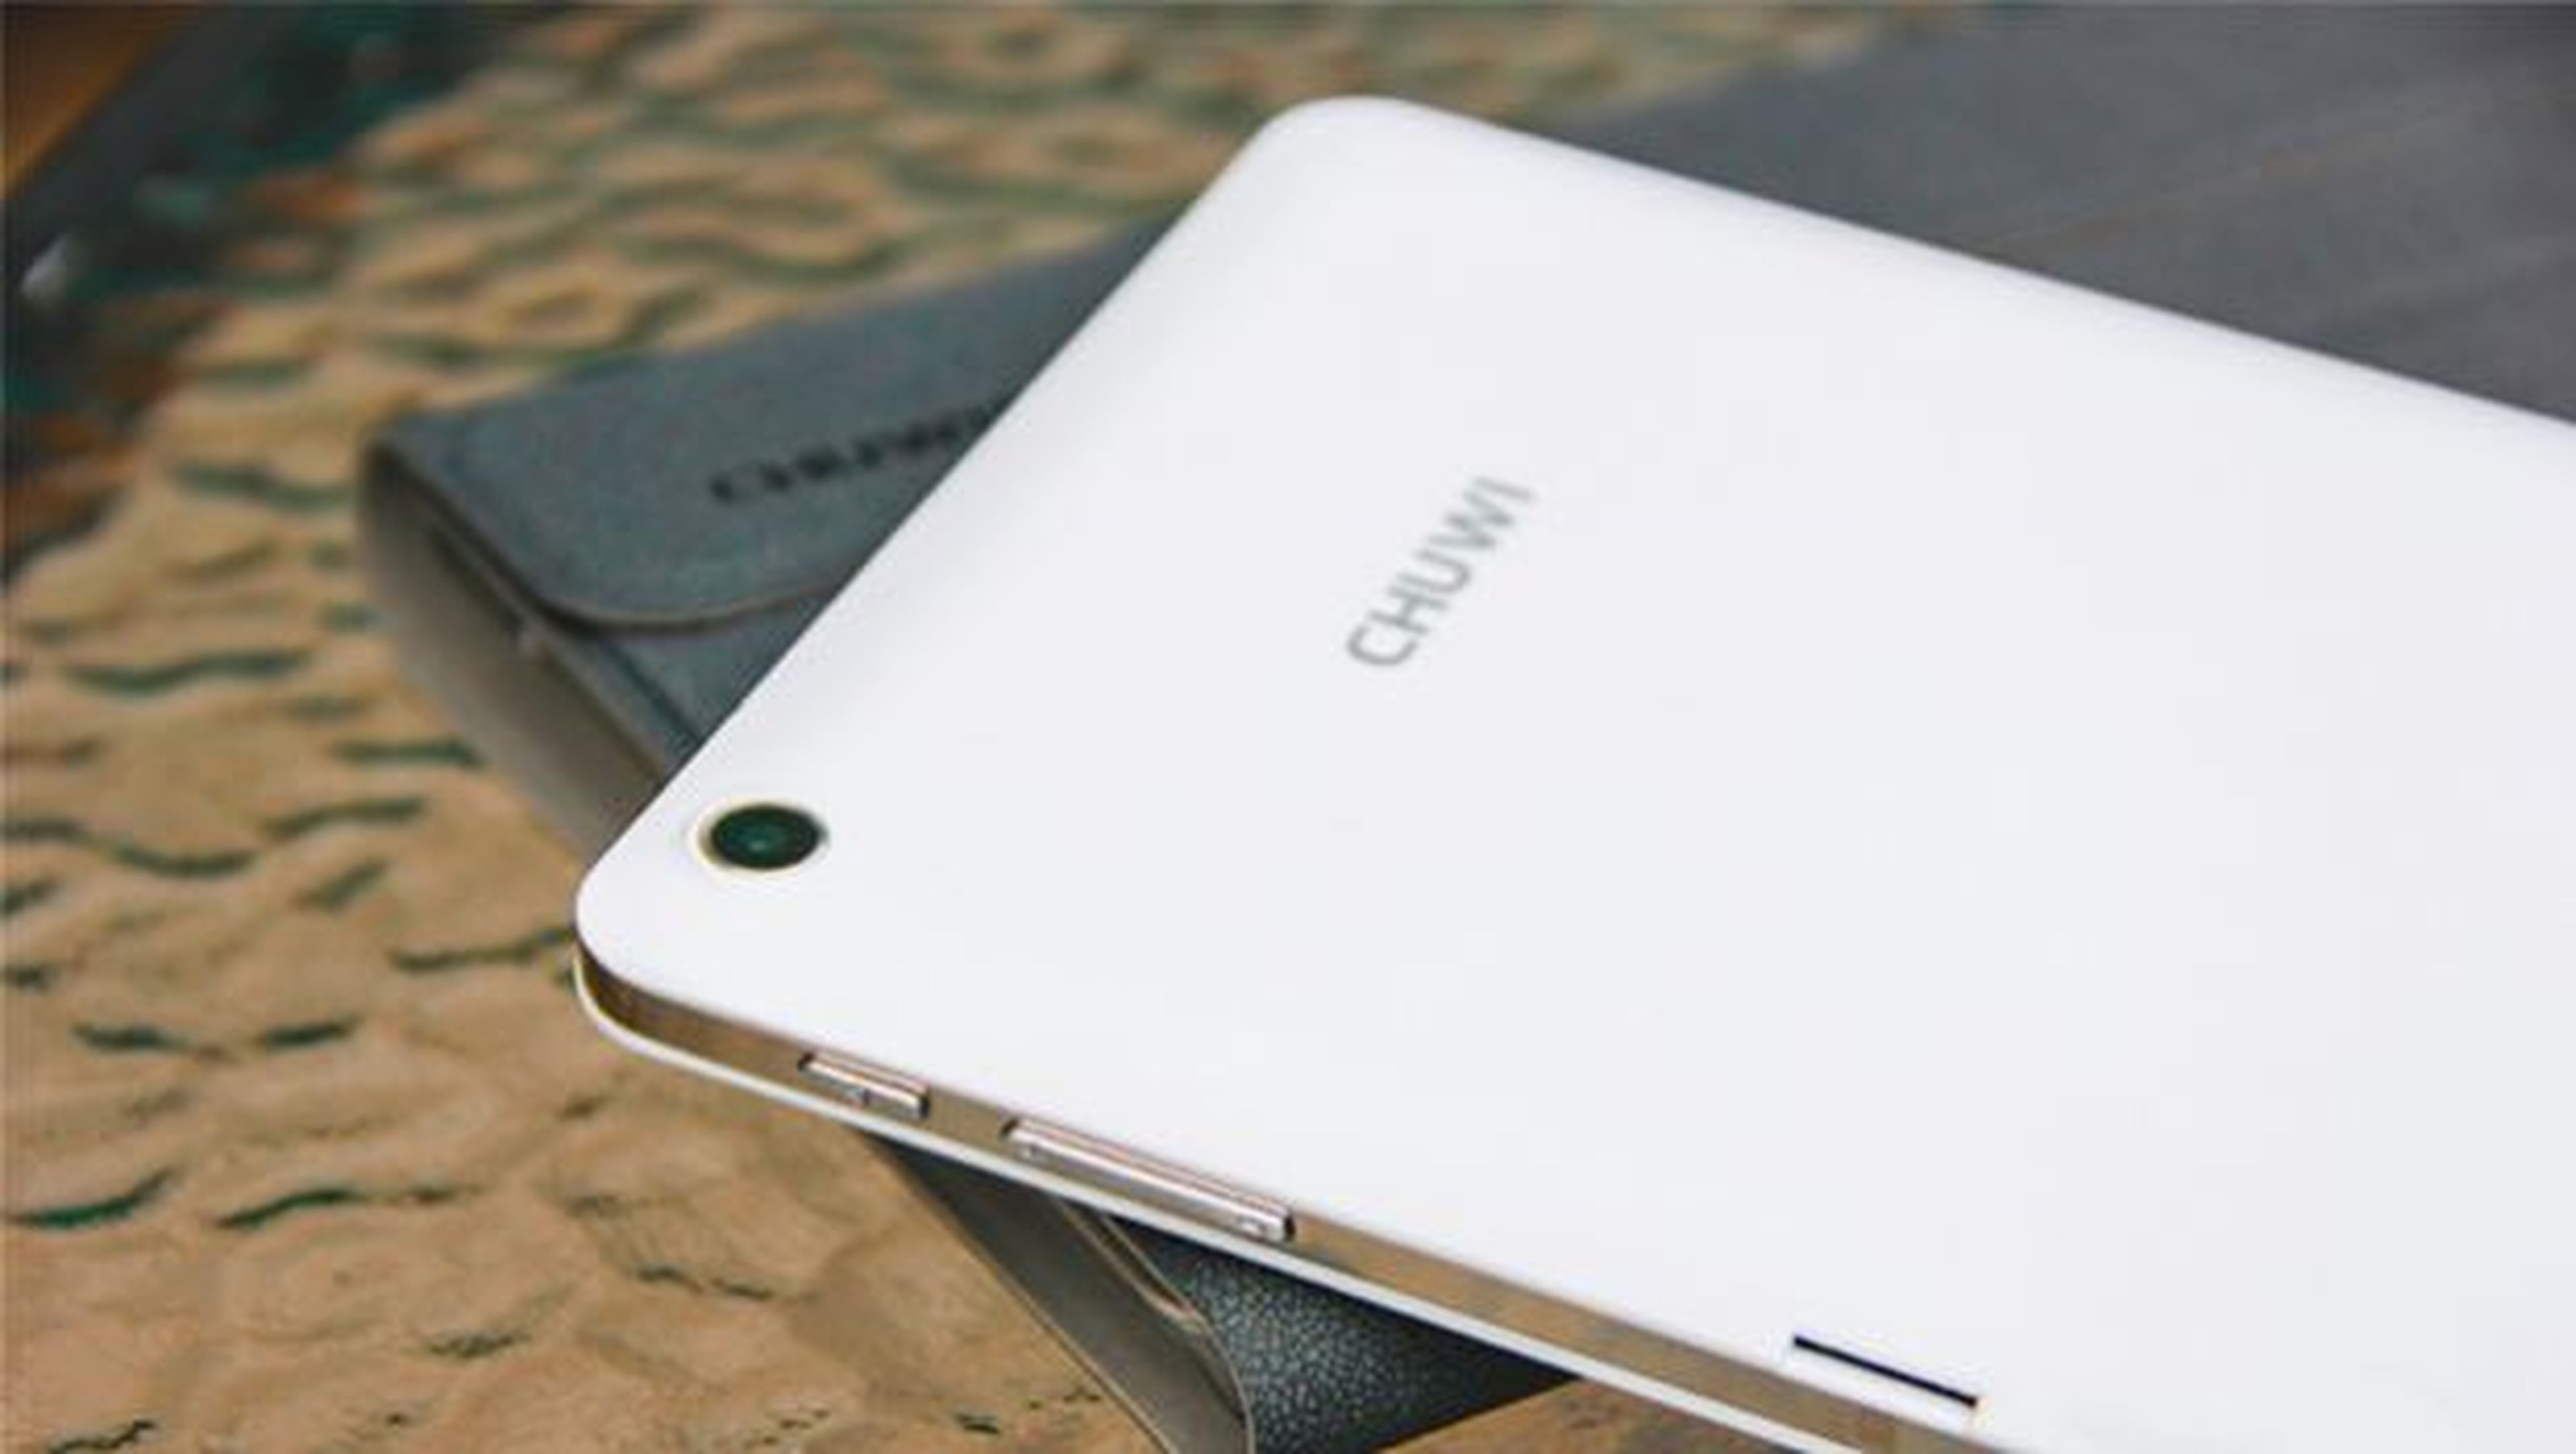 La Chuwi Hi8 Pro es una de las de las tablets chinas con Windows 10 más populares.